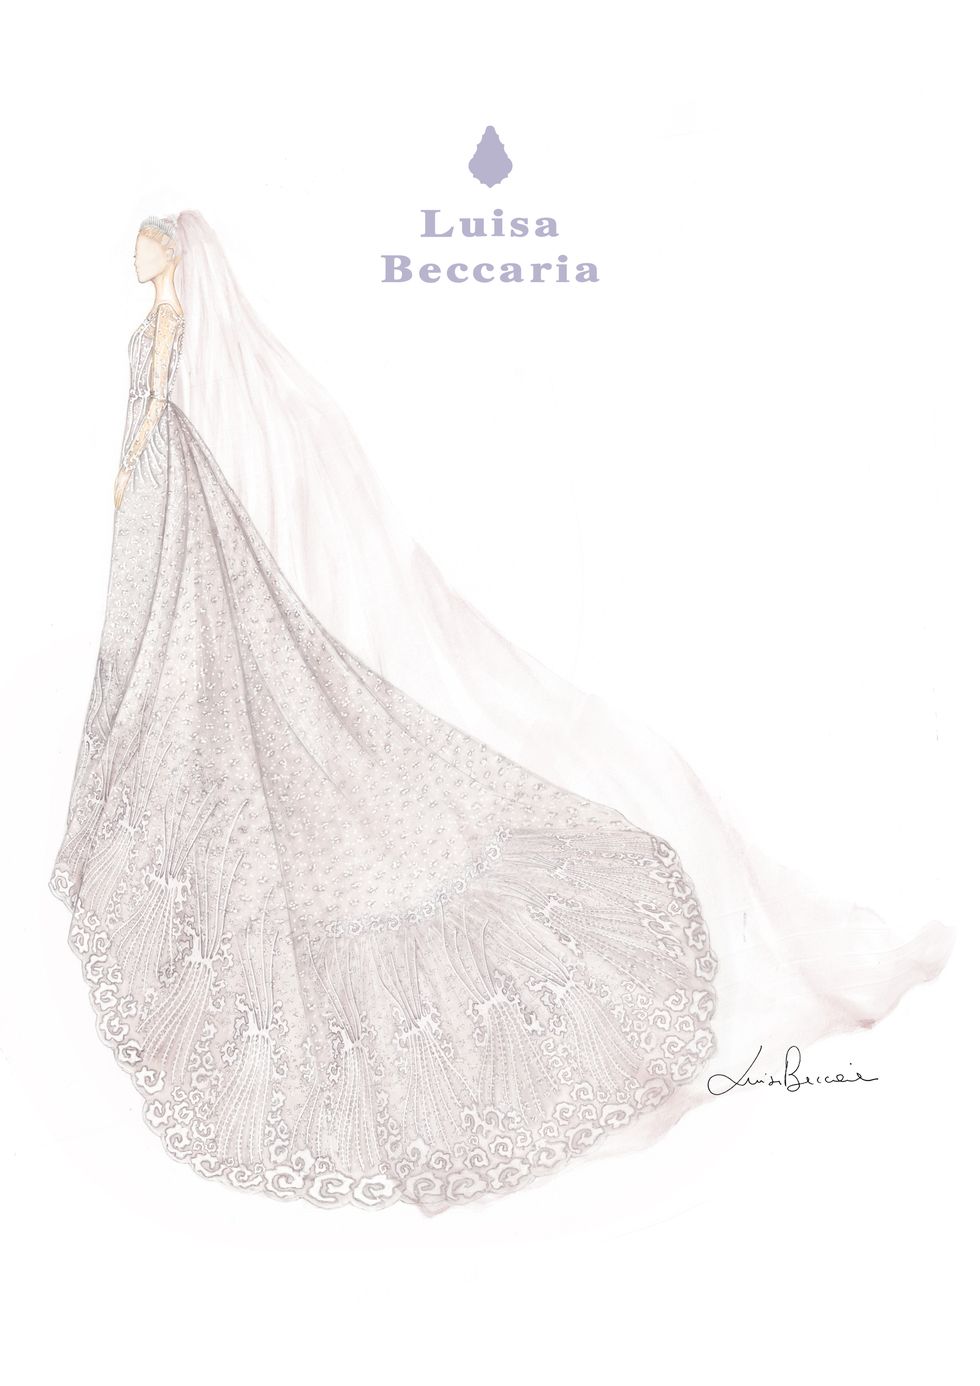 luisa beccaria gabriella windsor dress